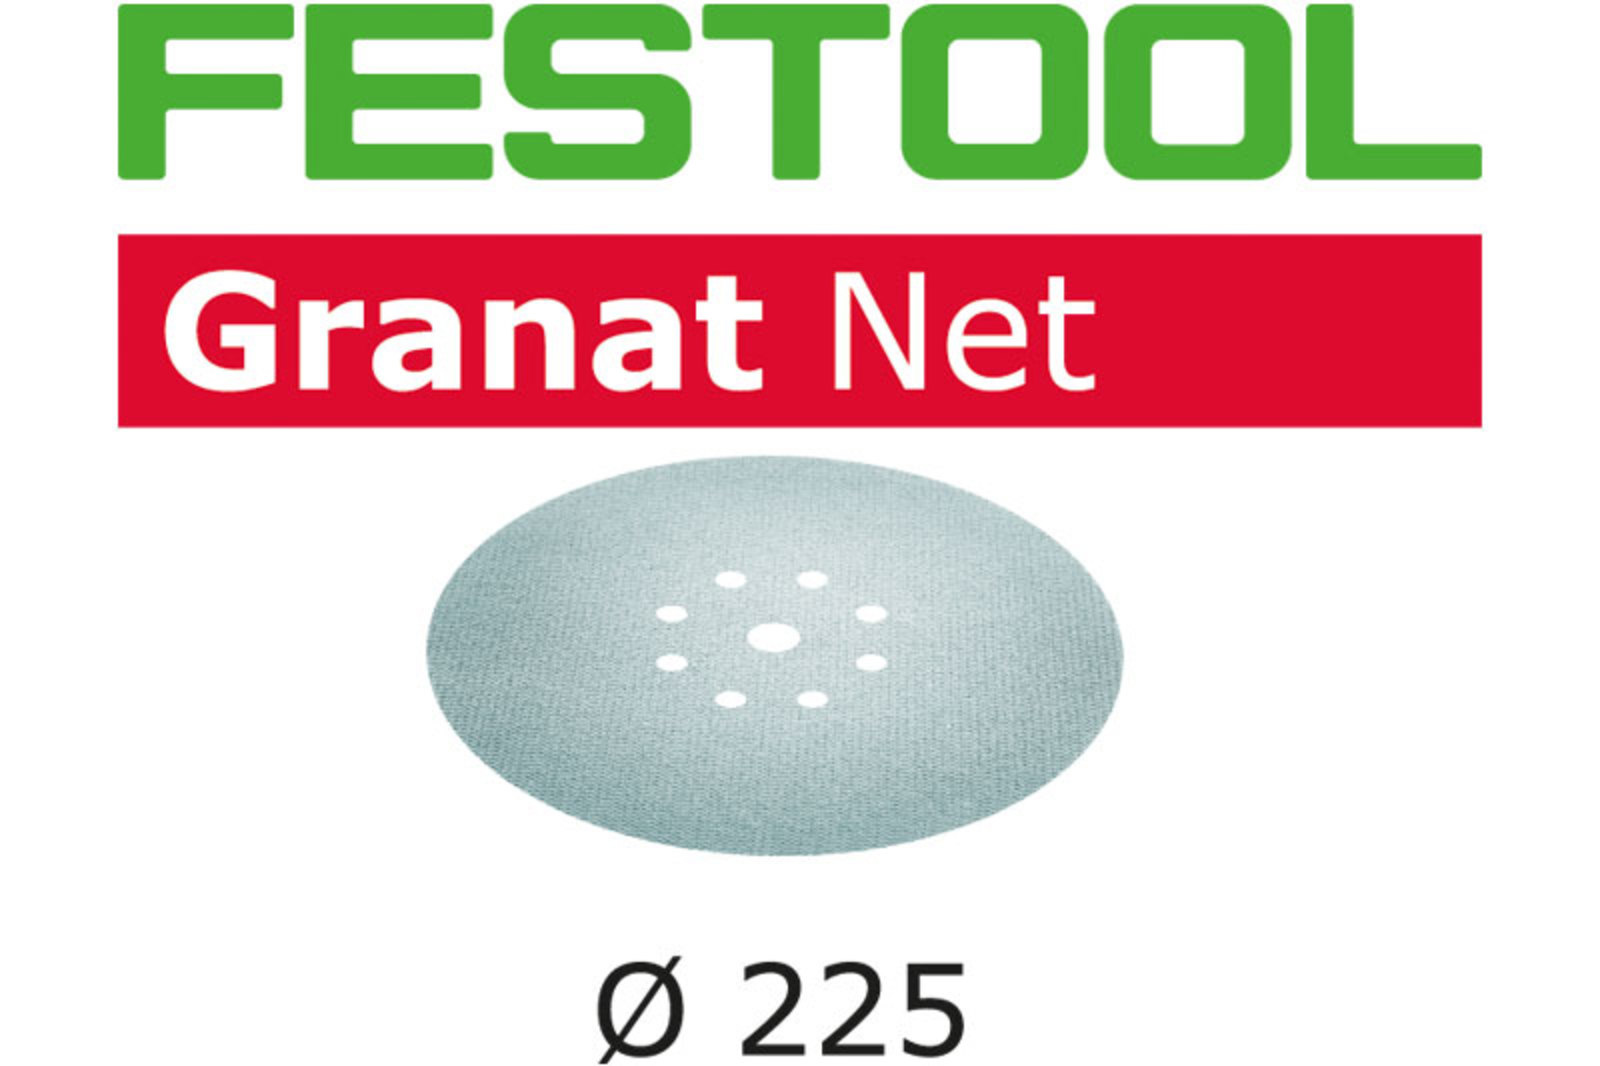 Шлифовальные материал на сетчатой основе Festool Granat Net D225 (СЕТКА)